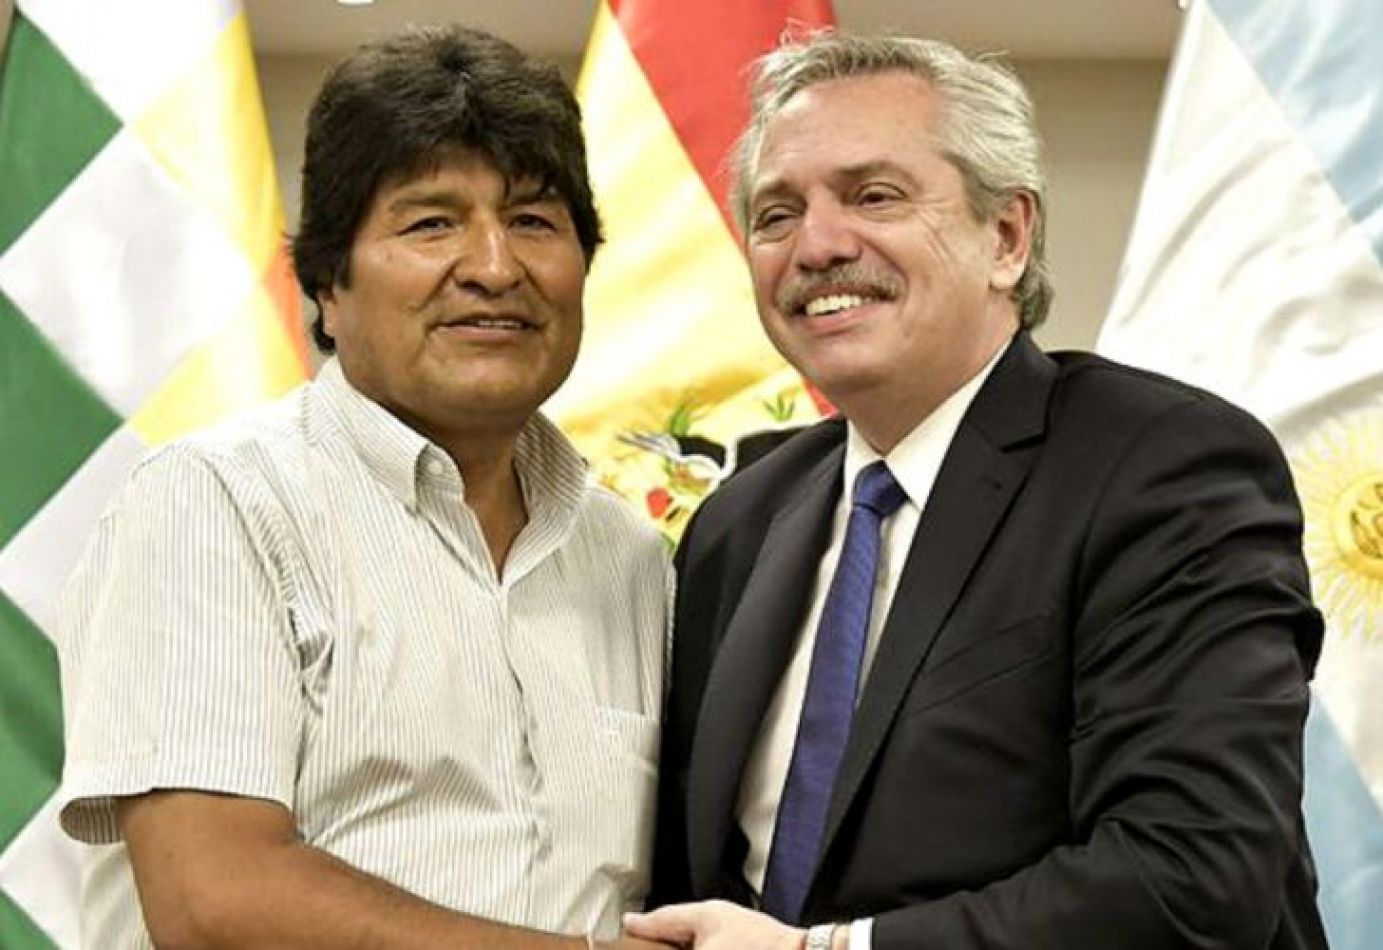 Evo Morales: "Hoy vuelve la esperanza"